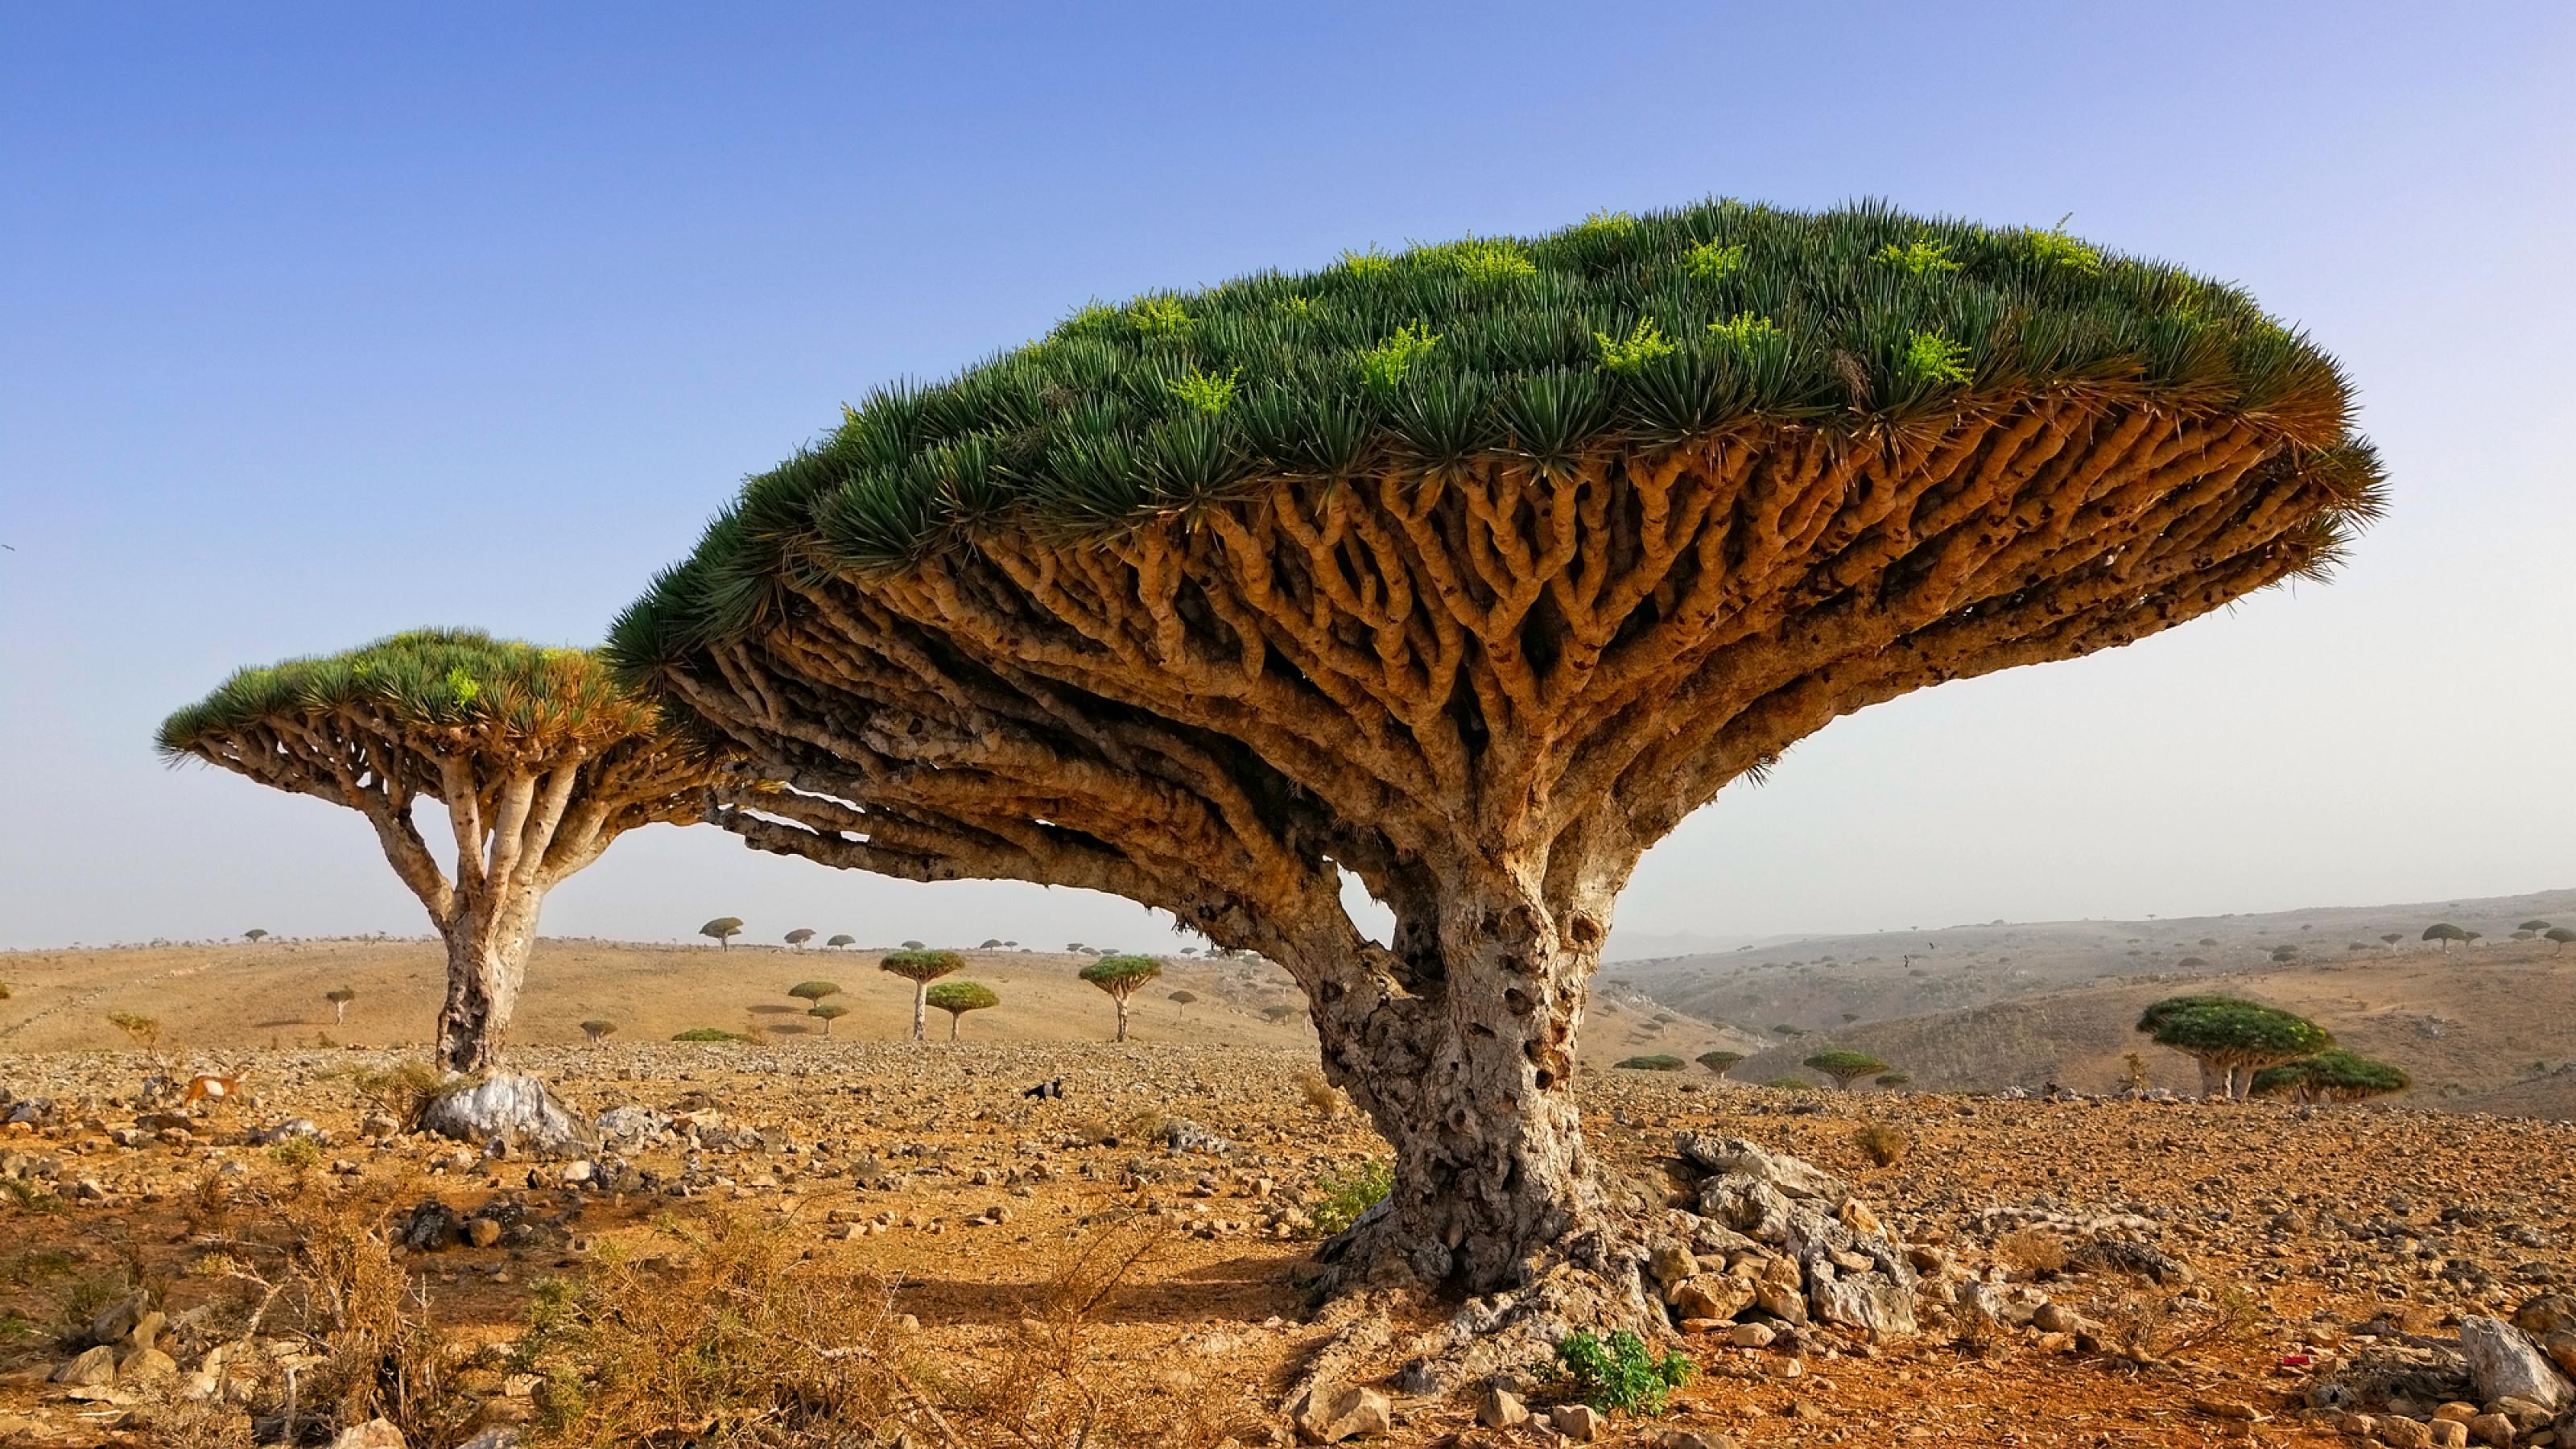 Der Drachenbaum steht in einer Wüstenlandschaft. Seine zahlreichen Äste wachen so symmetrisch in Himmel, dass daraus eine Art Plattform entsteht. Deren sattes Grün auf der Oberseite steht in starkem Kontrast zur trockenen Landschaft, 